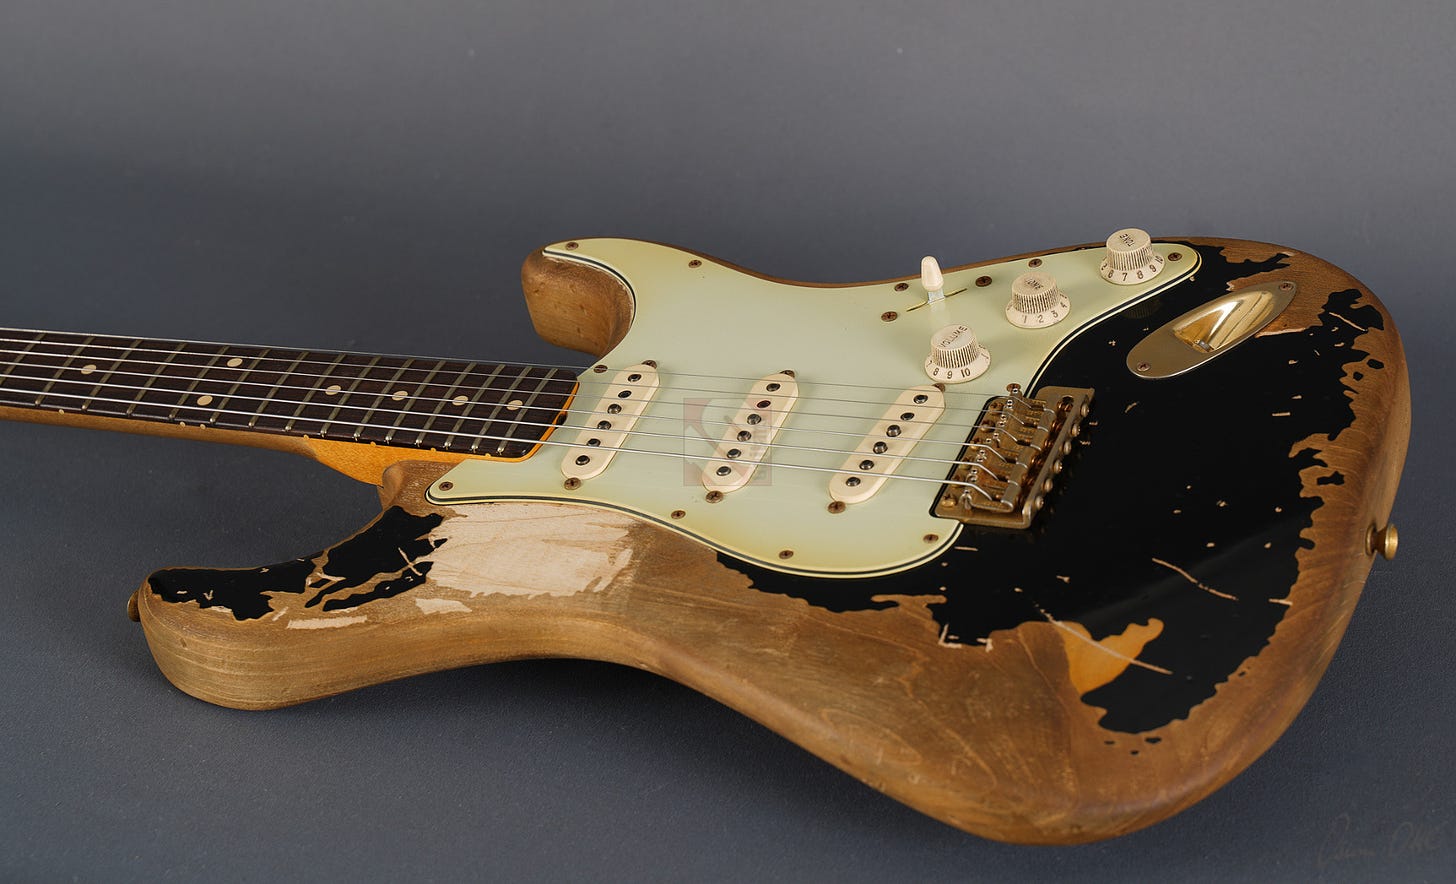 Fender Stratocaster John Mayer "Black One" Masterbuilt John Cruz (2010) |  Ten Guitars